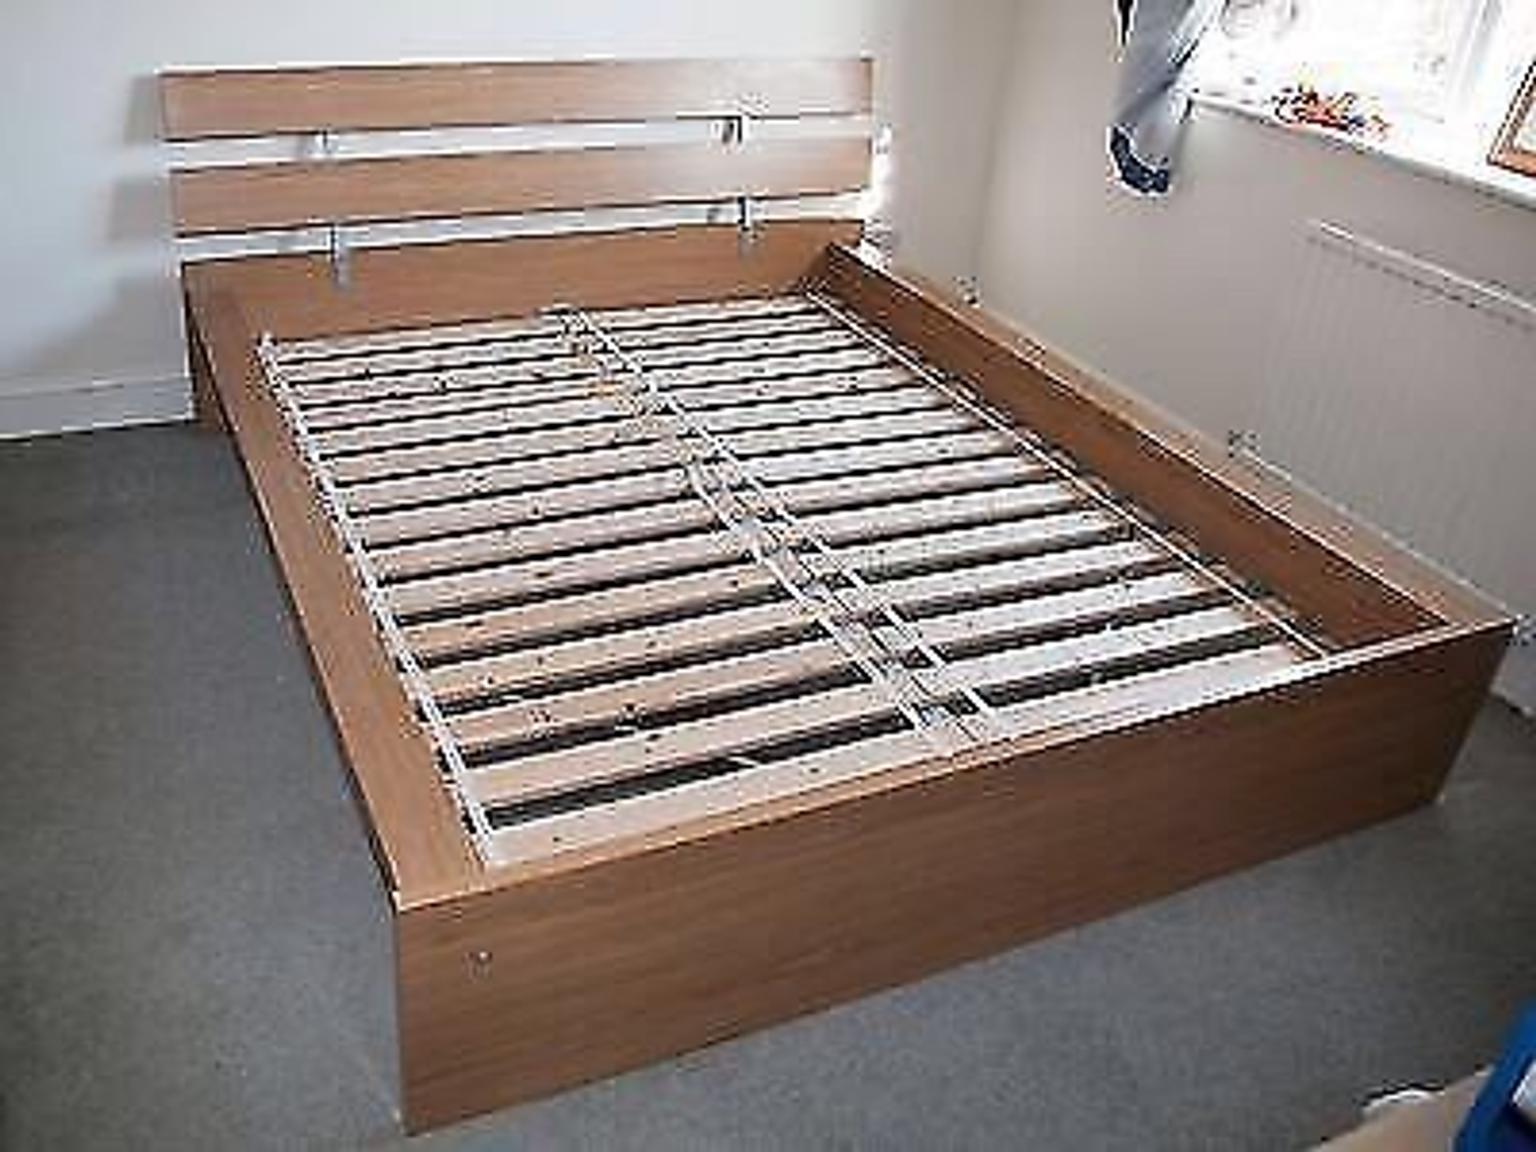 кровать с пружинами скрипит